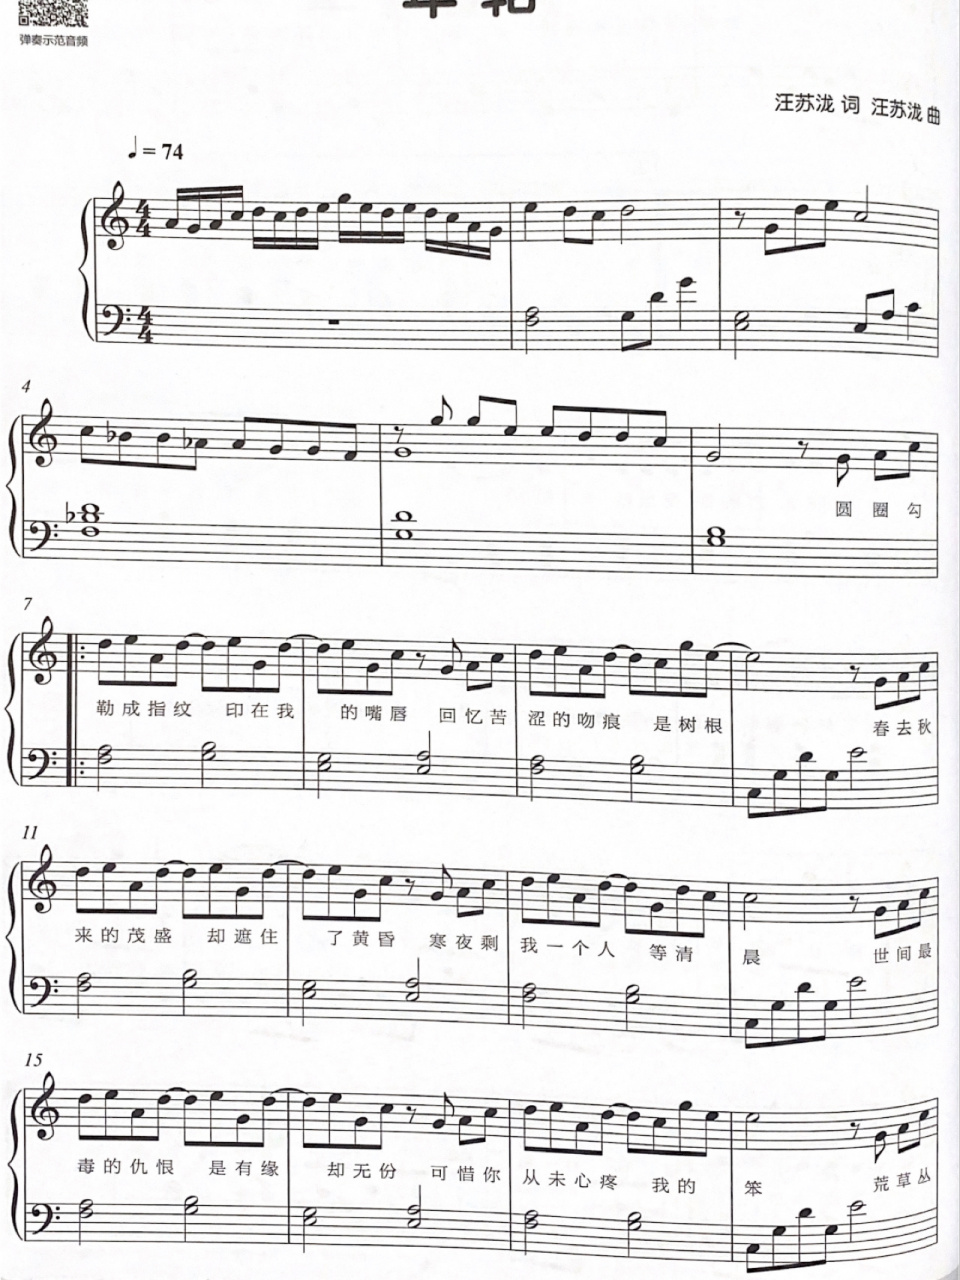 《年轮》简易钢琴谱 一首非常好听的歌,最近超爱